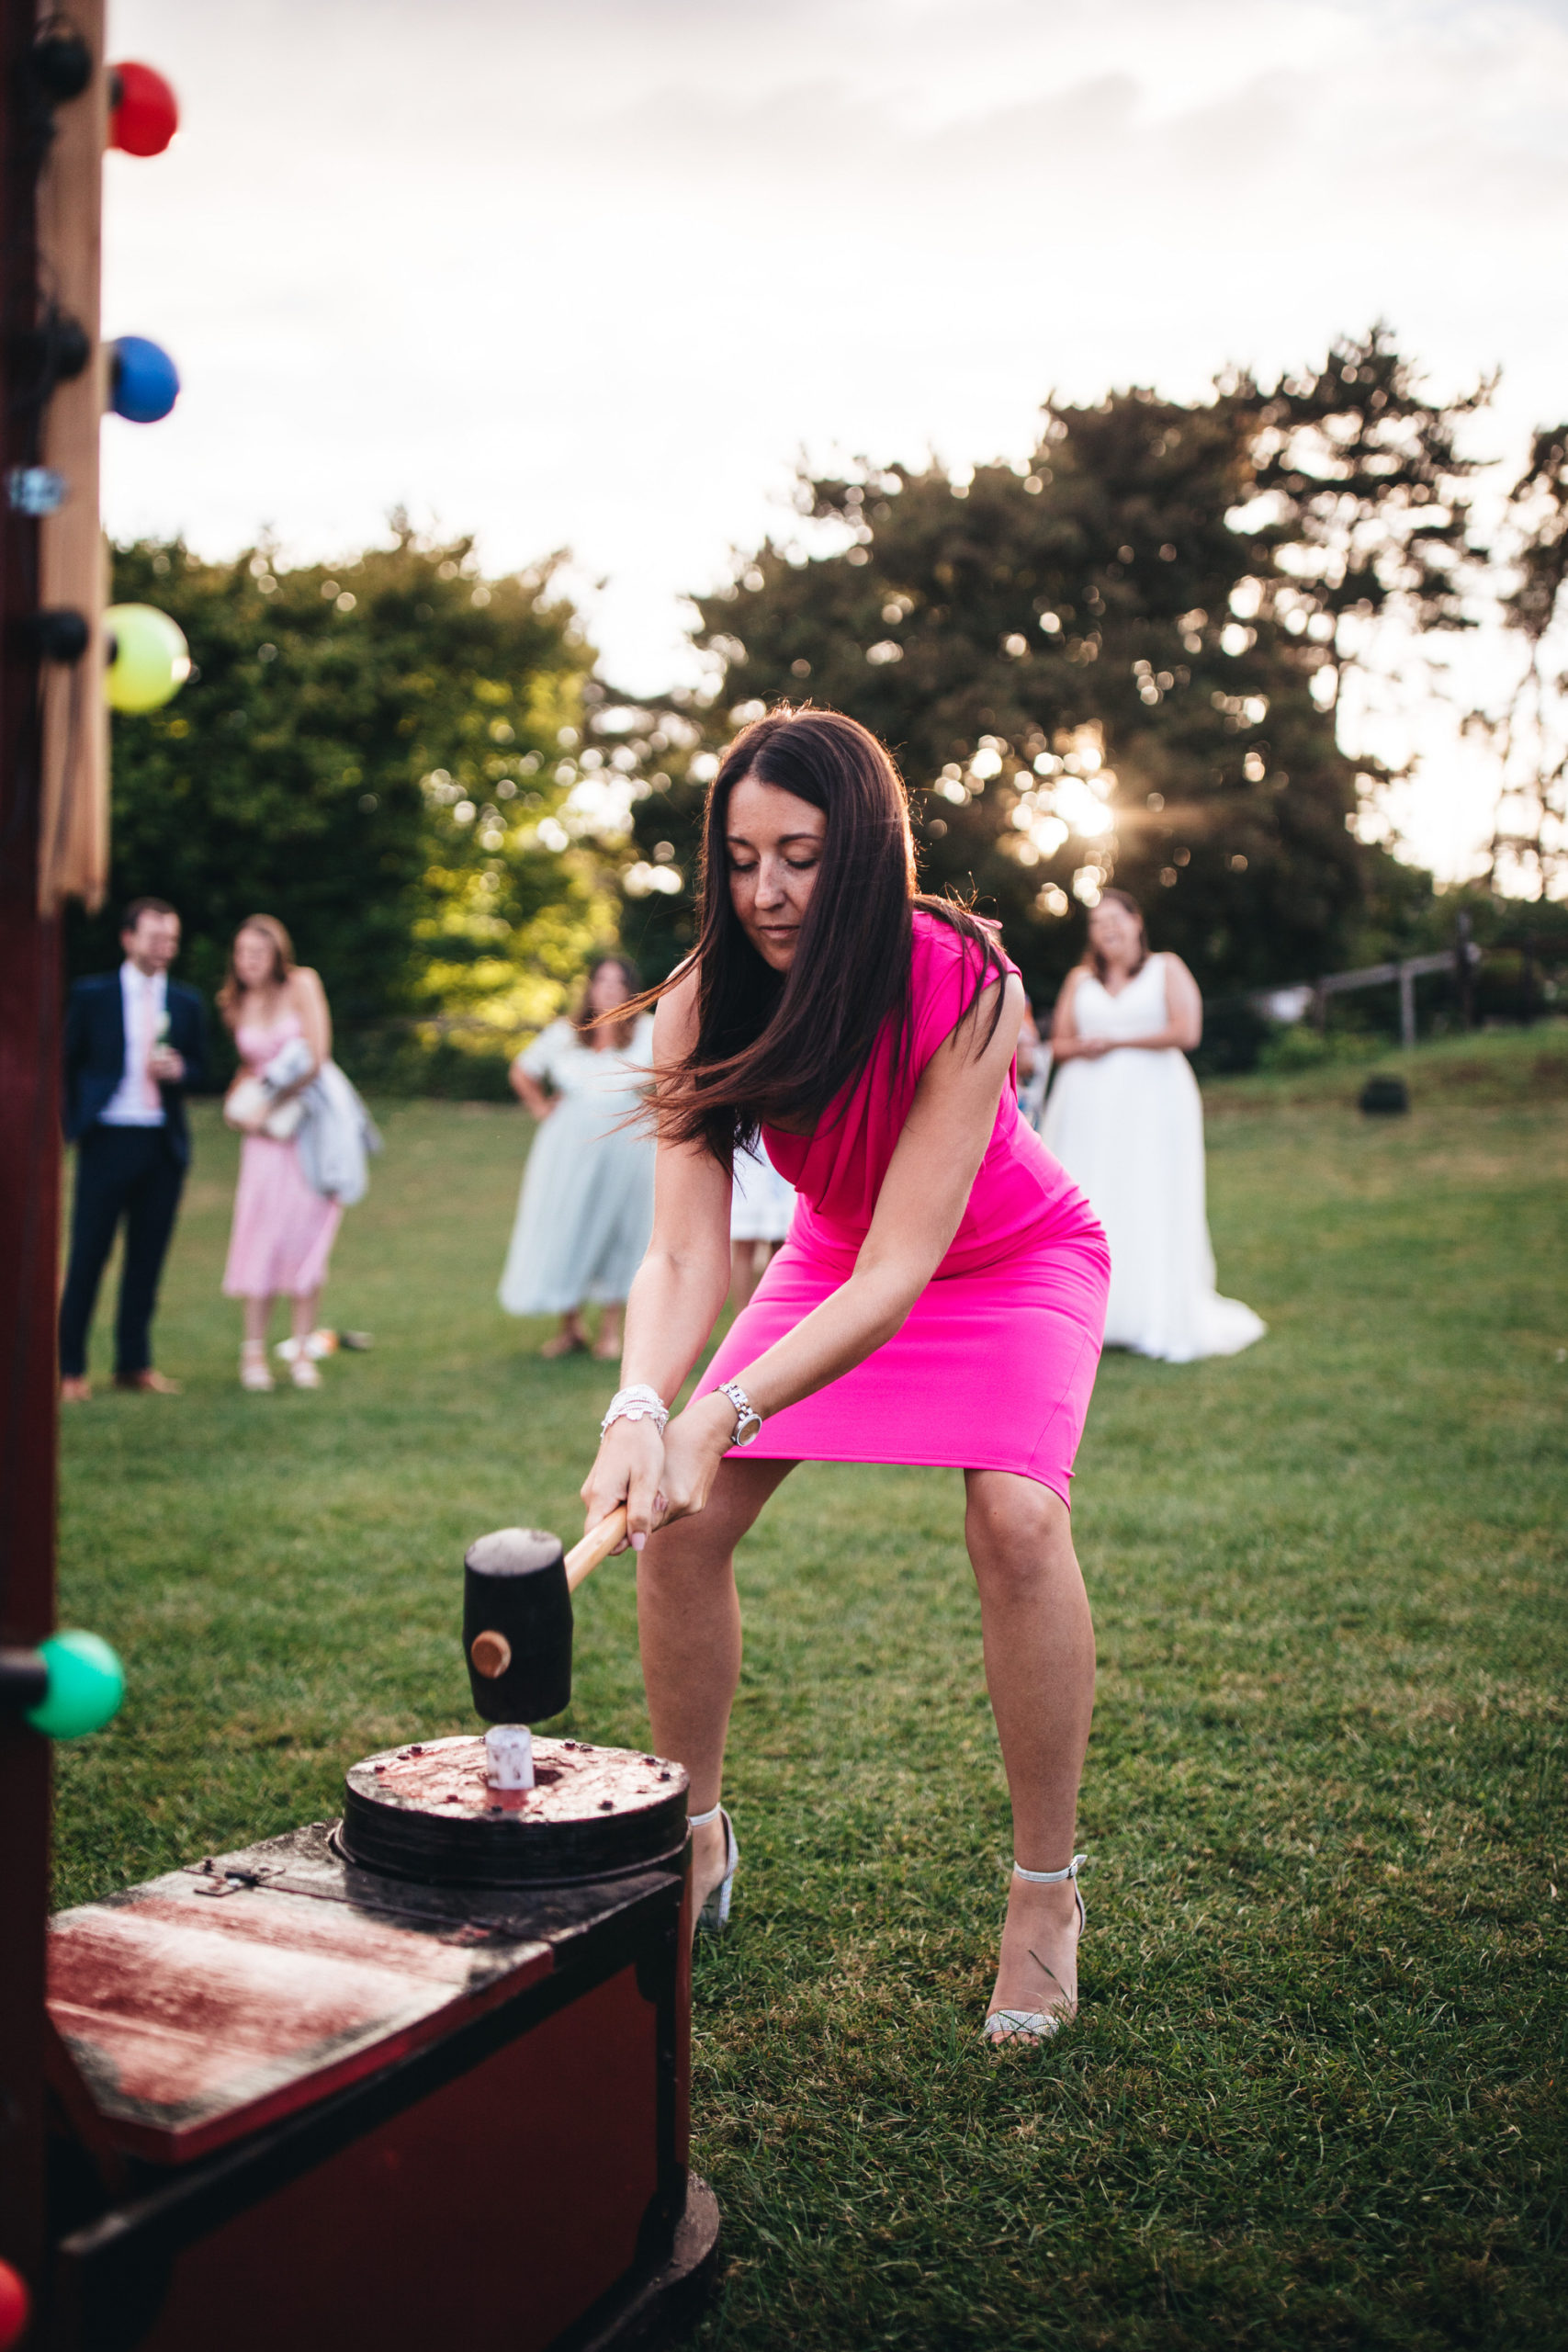 women plays strongman game at wedding in pink dress